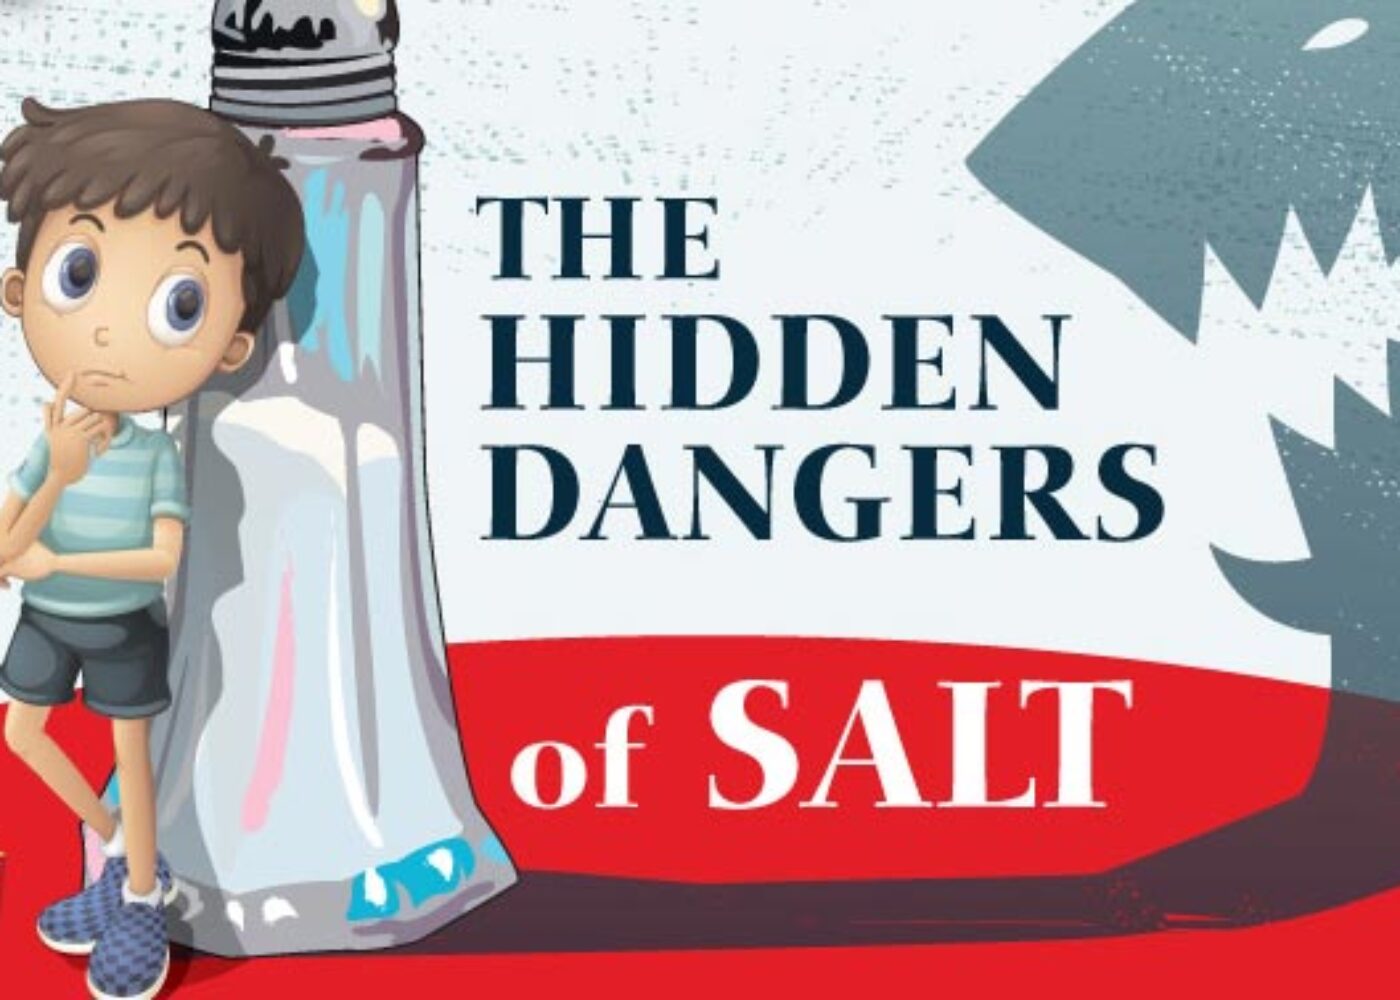 The hidden dangers of salt